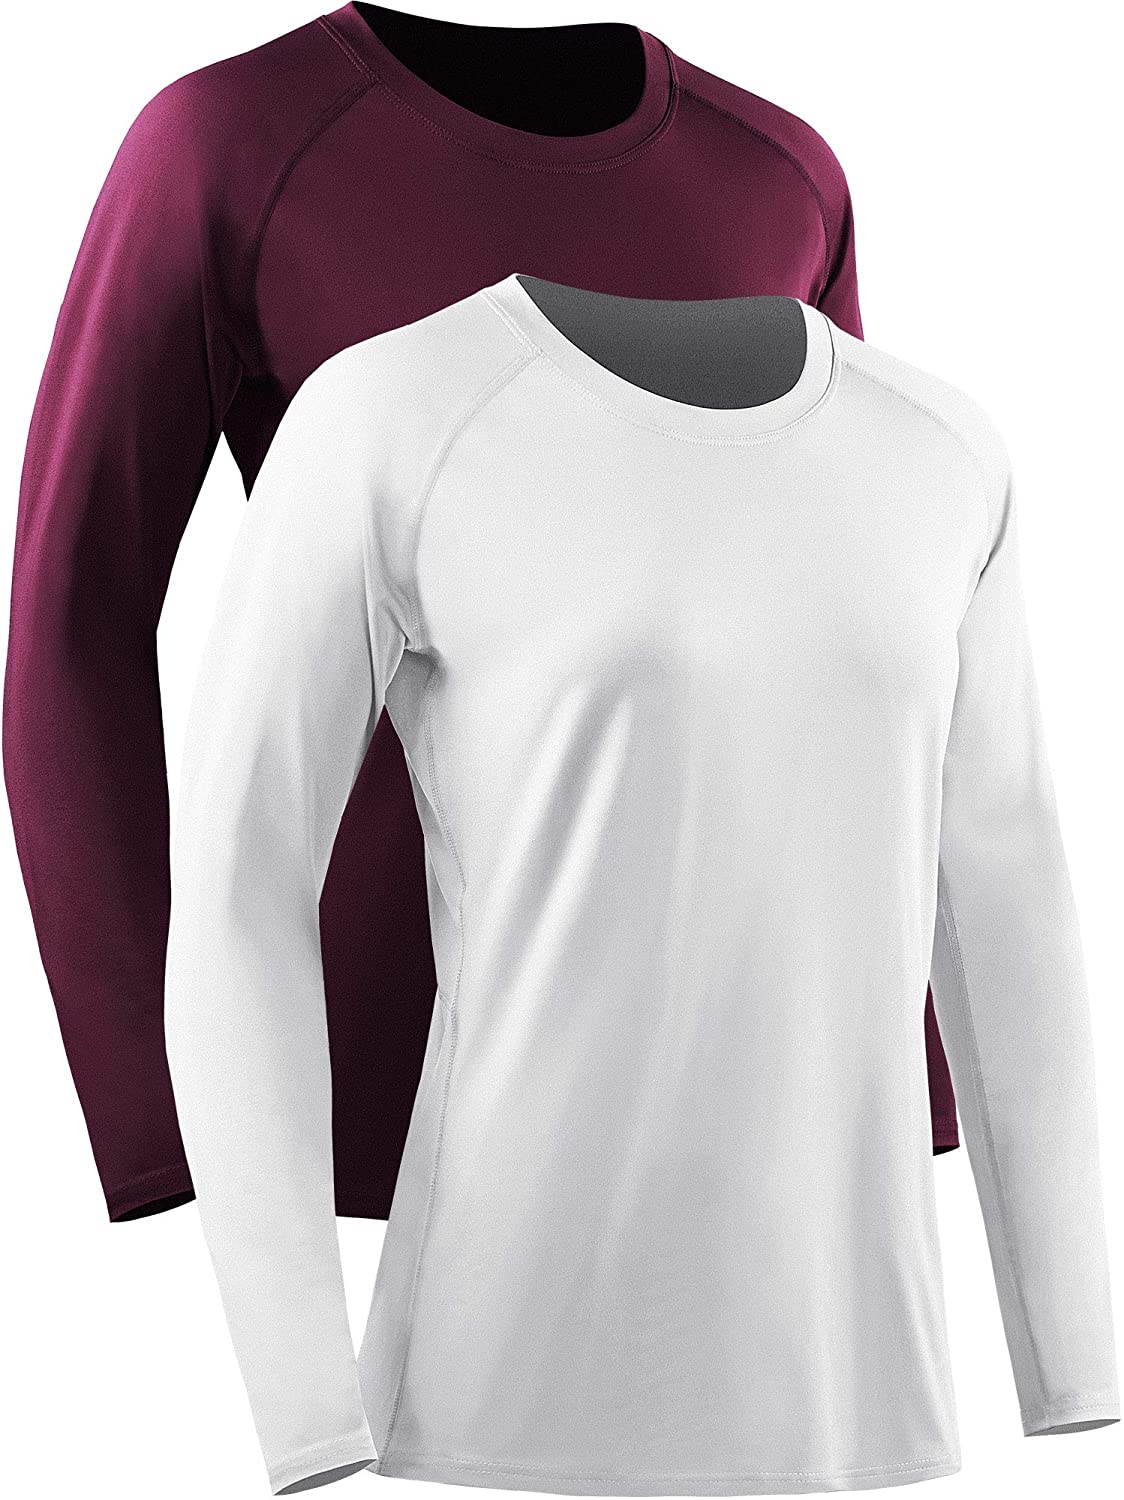 Neleus Women's Dry Fit Workout Running Long Sleeve Shirt 